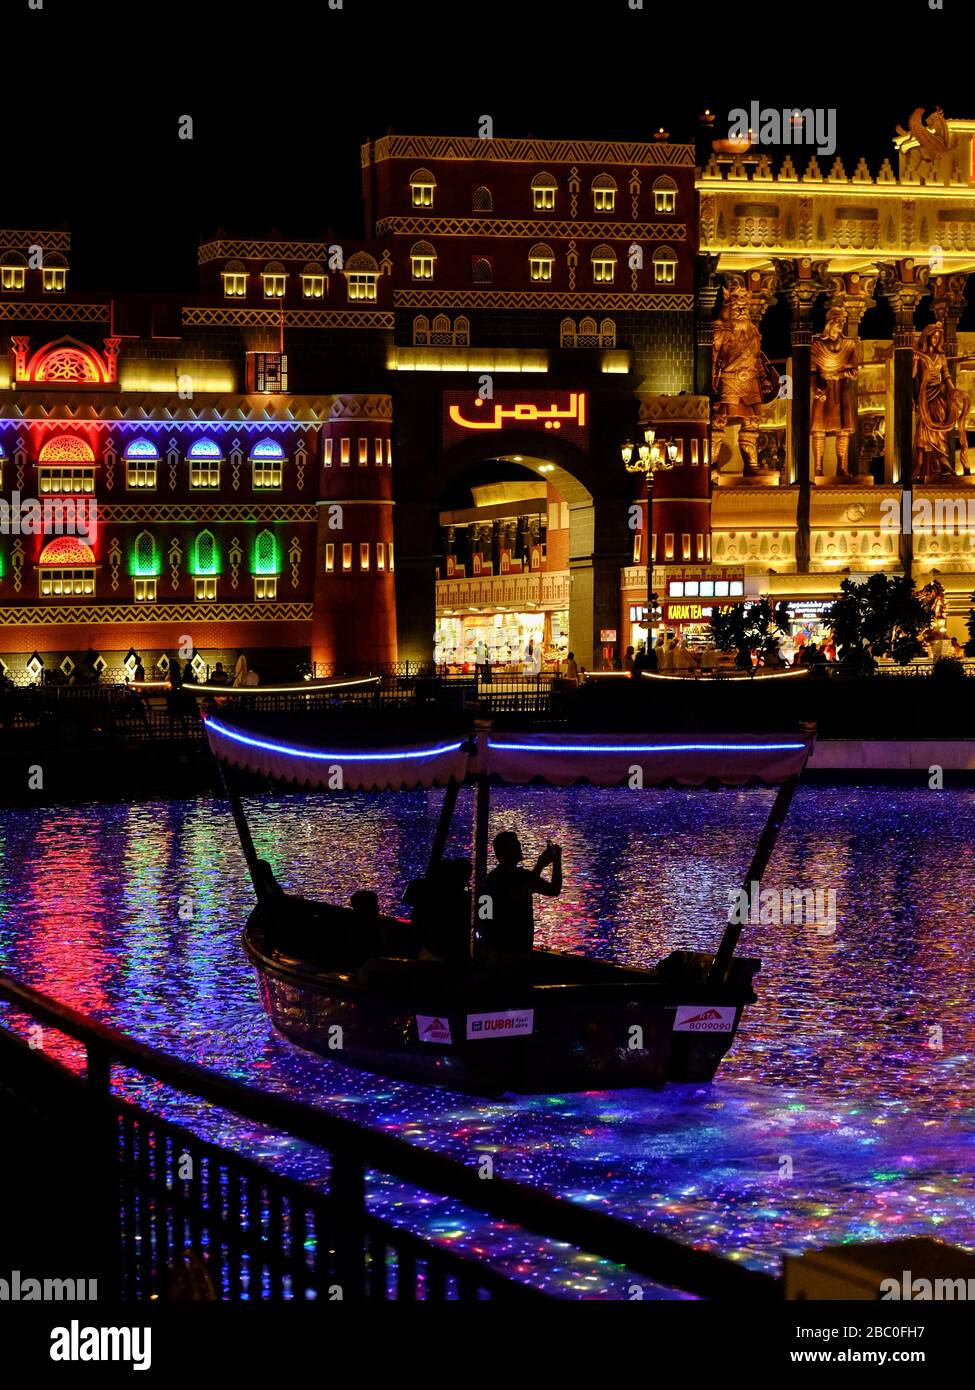 Scatto notturno all'interno di Global Village, Dubai, Emirati Arabi Uniti. Global Village combina culture di 90 paesi in tutto il mondo in un unico luogo. Foto Stock